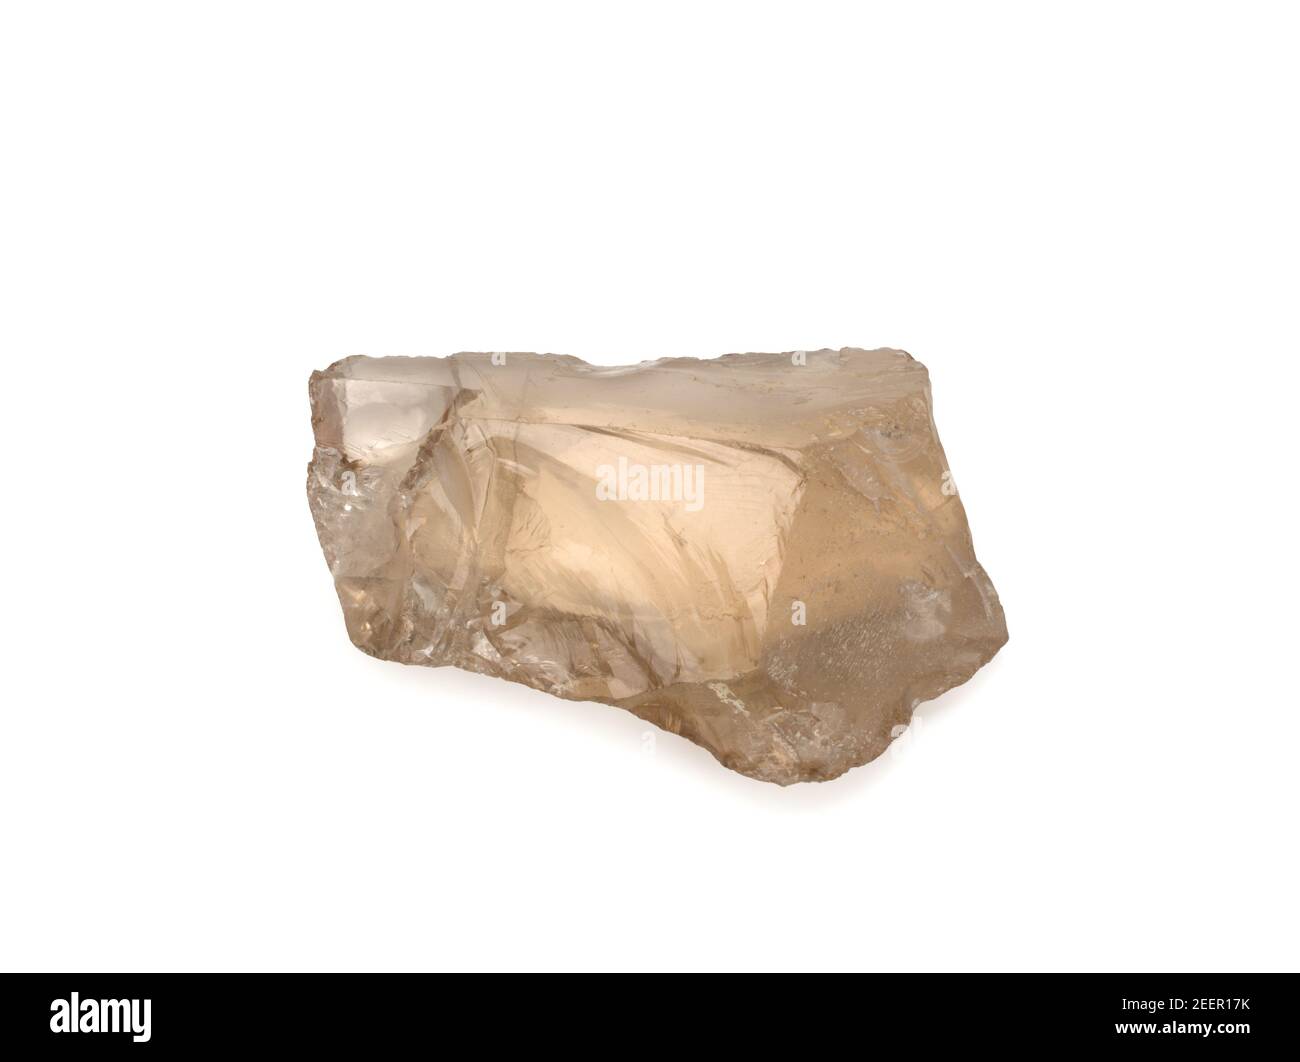 Nahaufnahme der Probe des natürlichen Minerals aus der geologischen Sammlung - Bergkristall Edelstein isoliert auf weißem Hintergrund Stockfoto